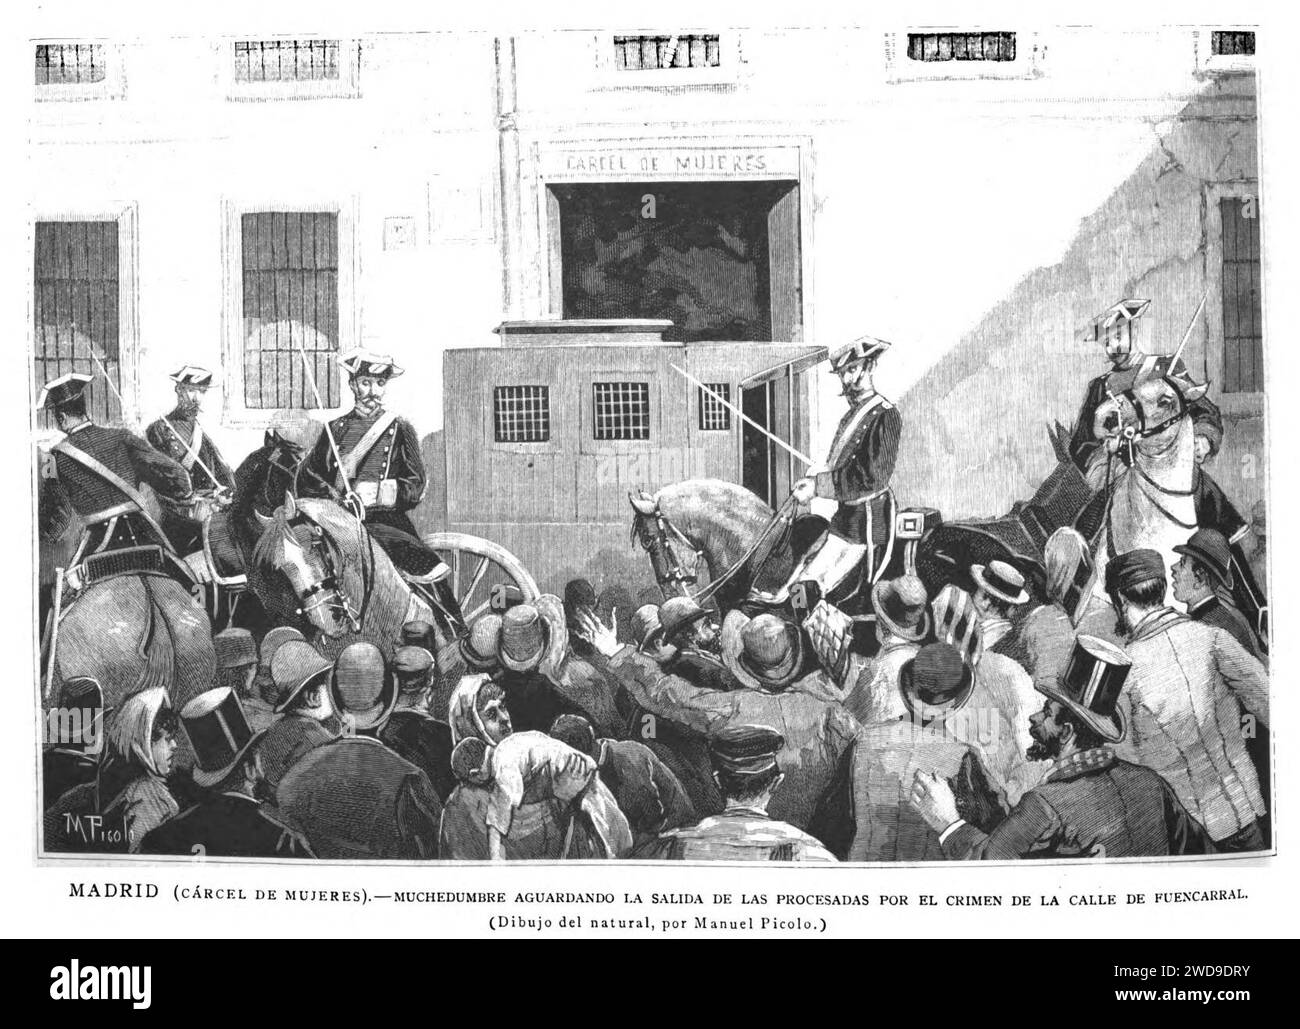 1889-04-08, la Ilustración Española y Americana, Madrid (cárcel de mujeres).—Muchedumbre aguardando la salida de las procesadas por el crimen de la calle de Fuencarral. Banque D'Images